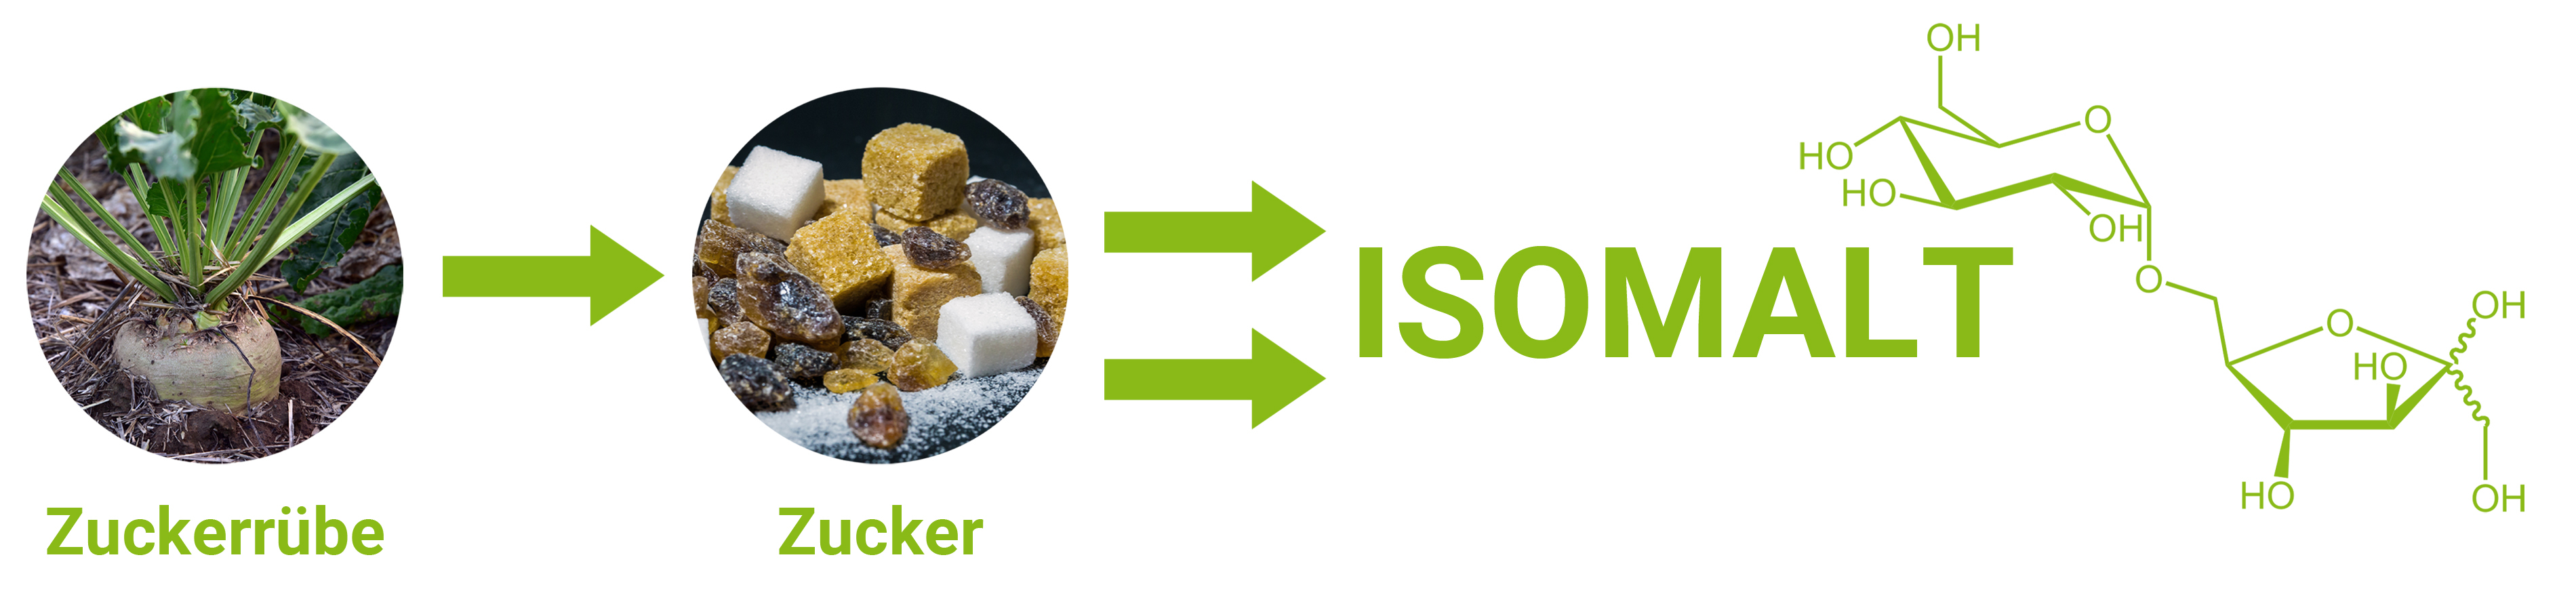 L'Isomalt est un substitut du sucre obtenu à partir du saccharose. 